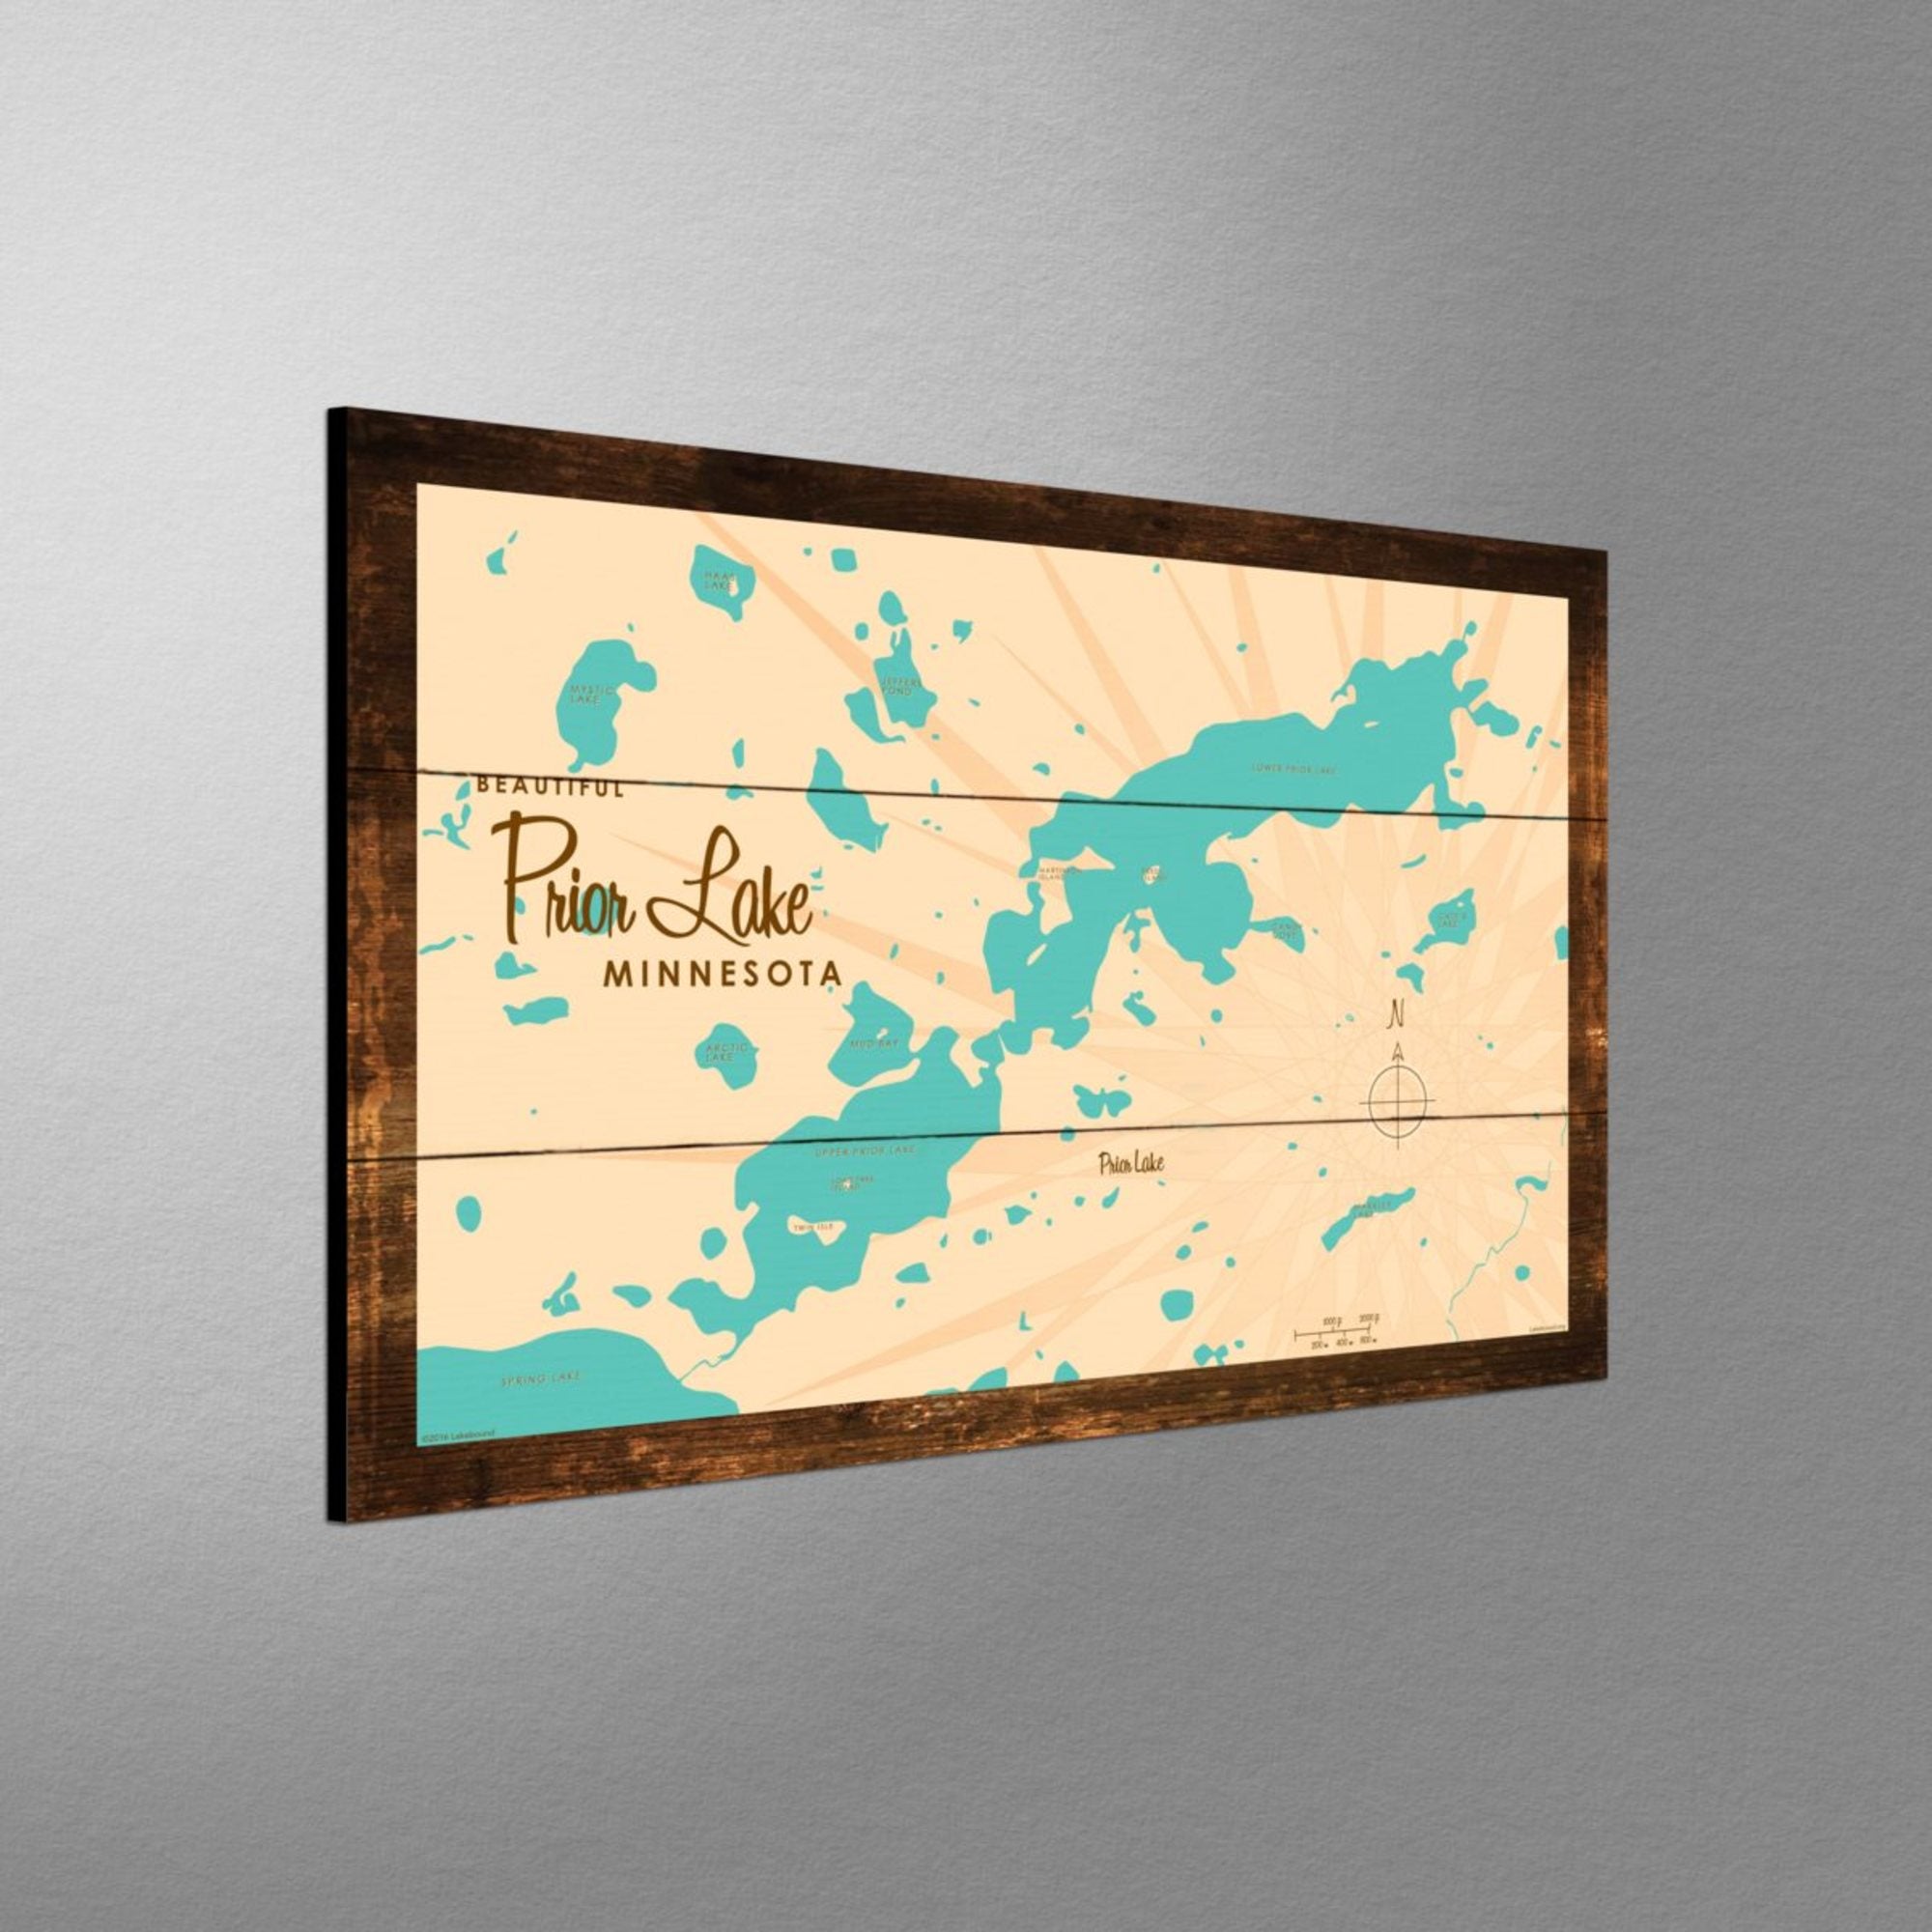 Prior Lake Minnesota, Rustic Wood Sign Map Art